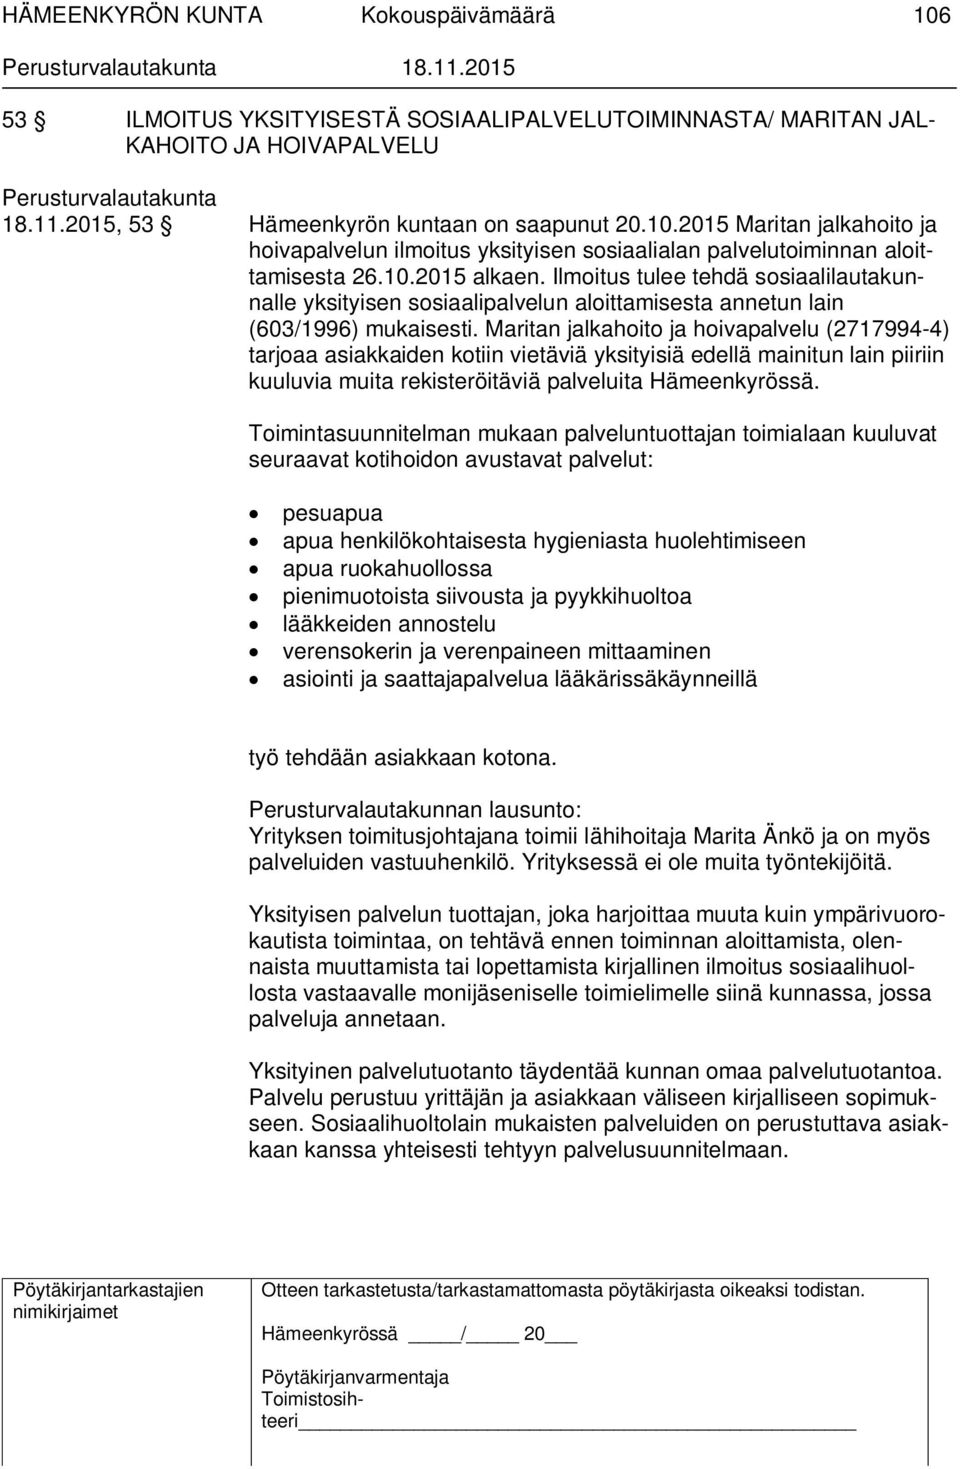 Maritan jalkahoito ja hoivapalvelu (2717994-4) tarjoaa asiakkaiden kotiin vietäviä yksityisiä edellä mainitun lain piiriin kuuluvia muita rekisteröitäviä palveluita Hämeenkyrössä.